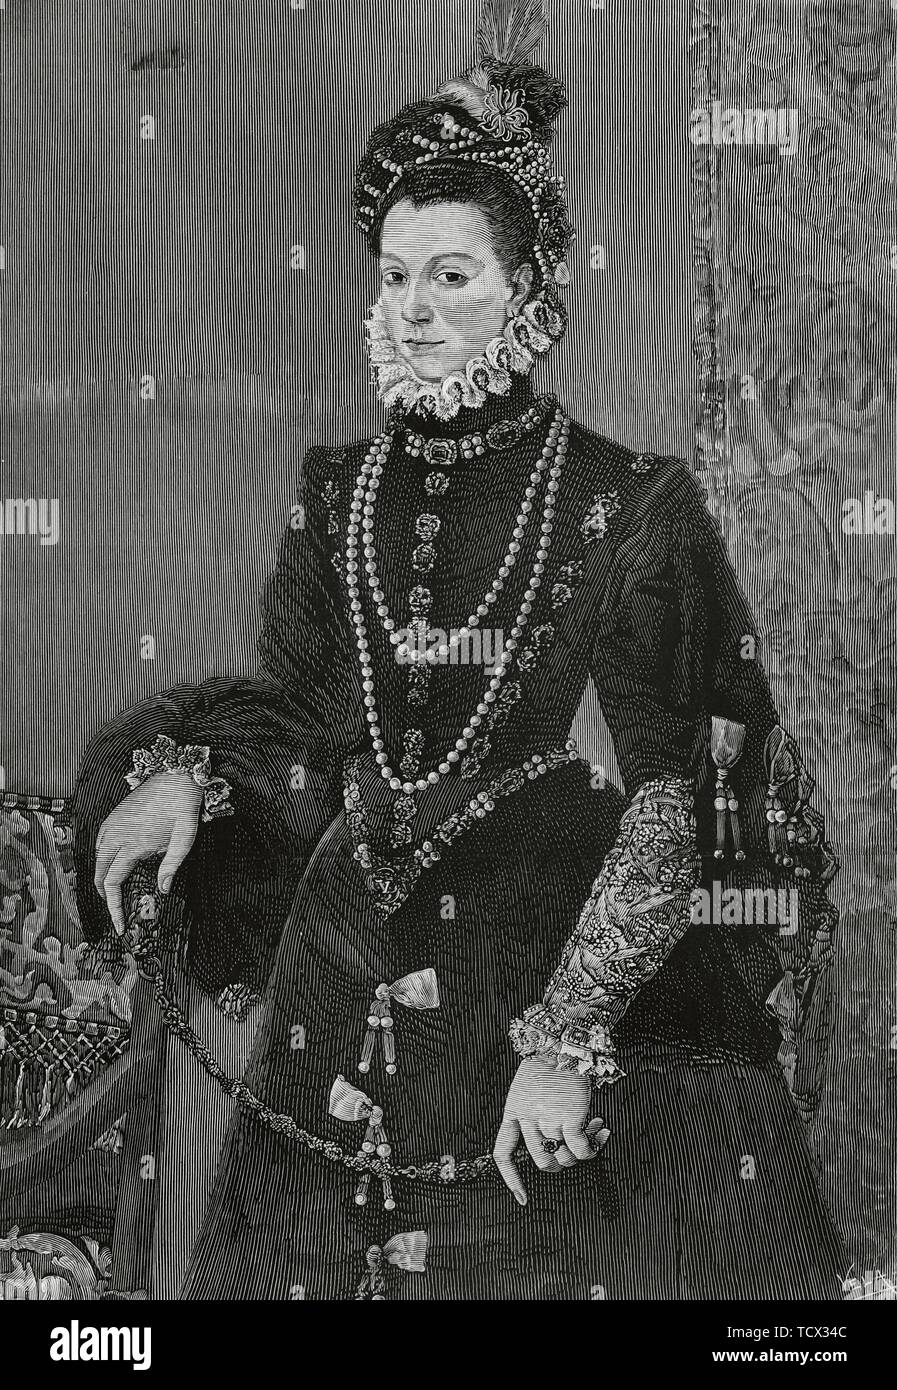 Isabel de Valois (1546-1568). Tercera esposa del rey Felipe II de España y reina consorte de España. Grabado por Vela a partir de un cuadro de Juan Pantoja de la Cruz. La Ilustración Española y Americana, 15 de noviembre de 1882. Stock Photo